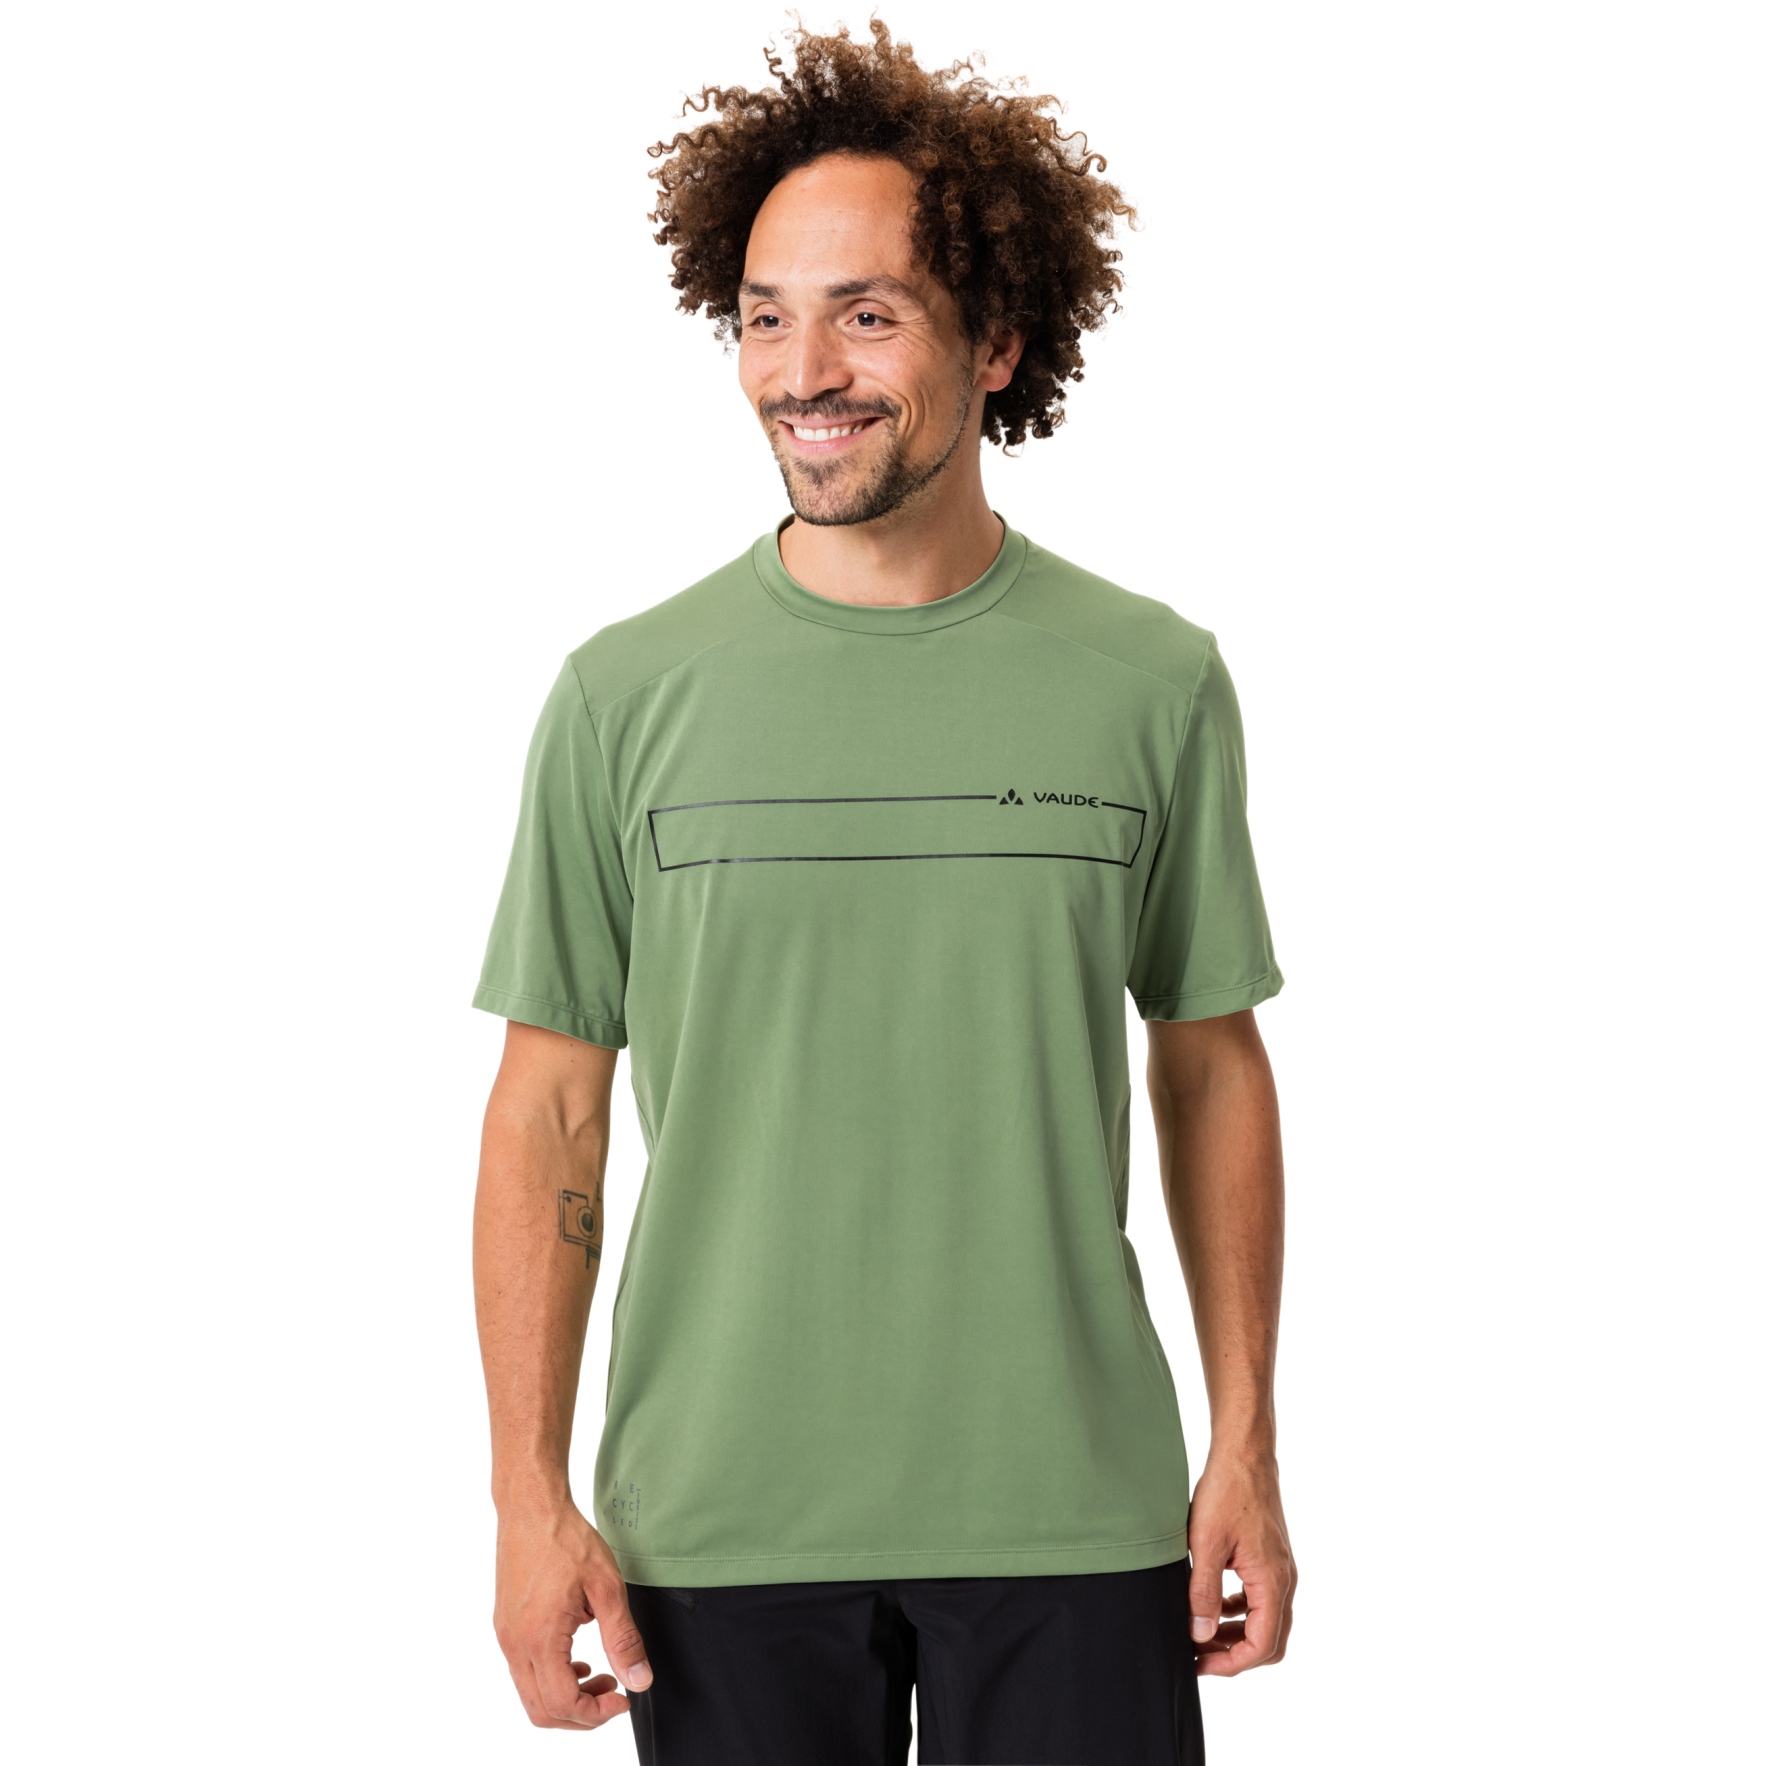 Produktbild von Vaude Qimsa Logo Shirt Herren - willow green